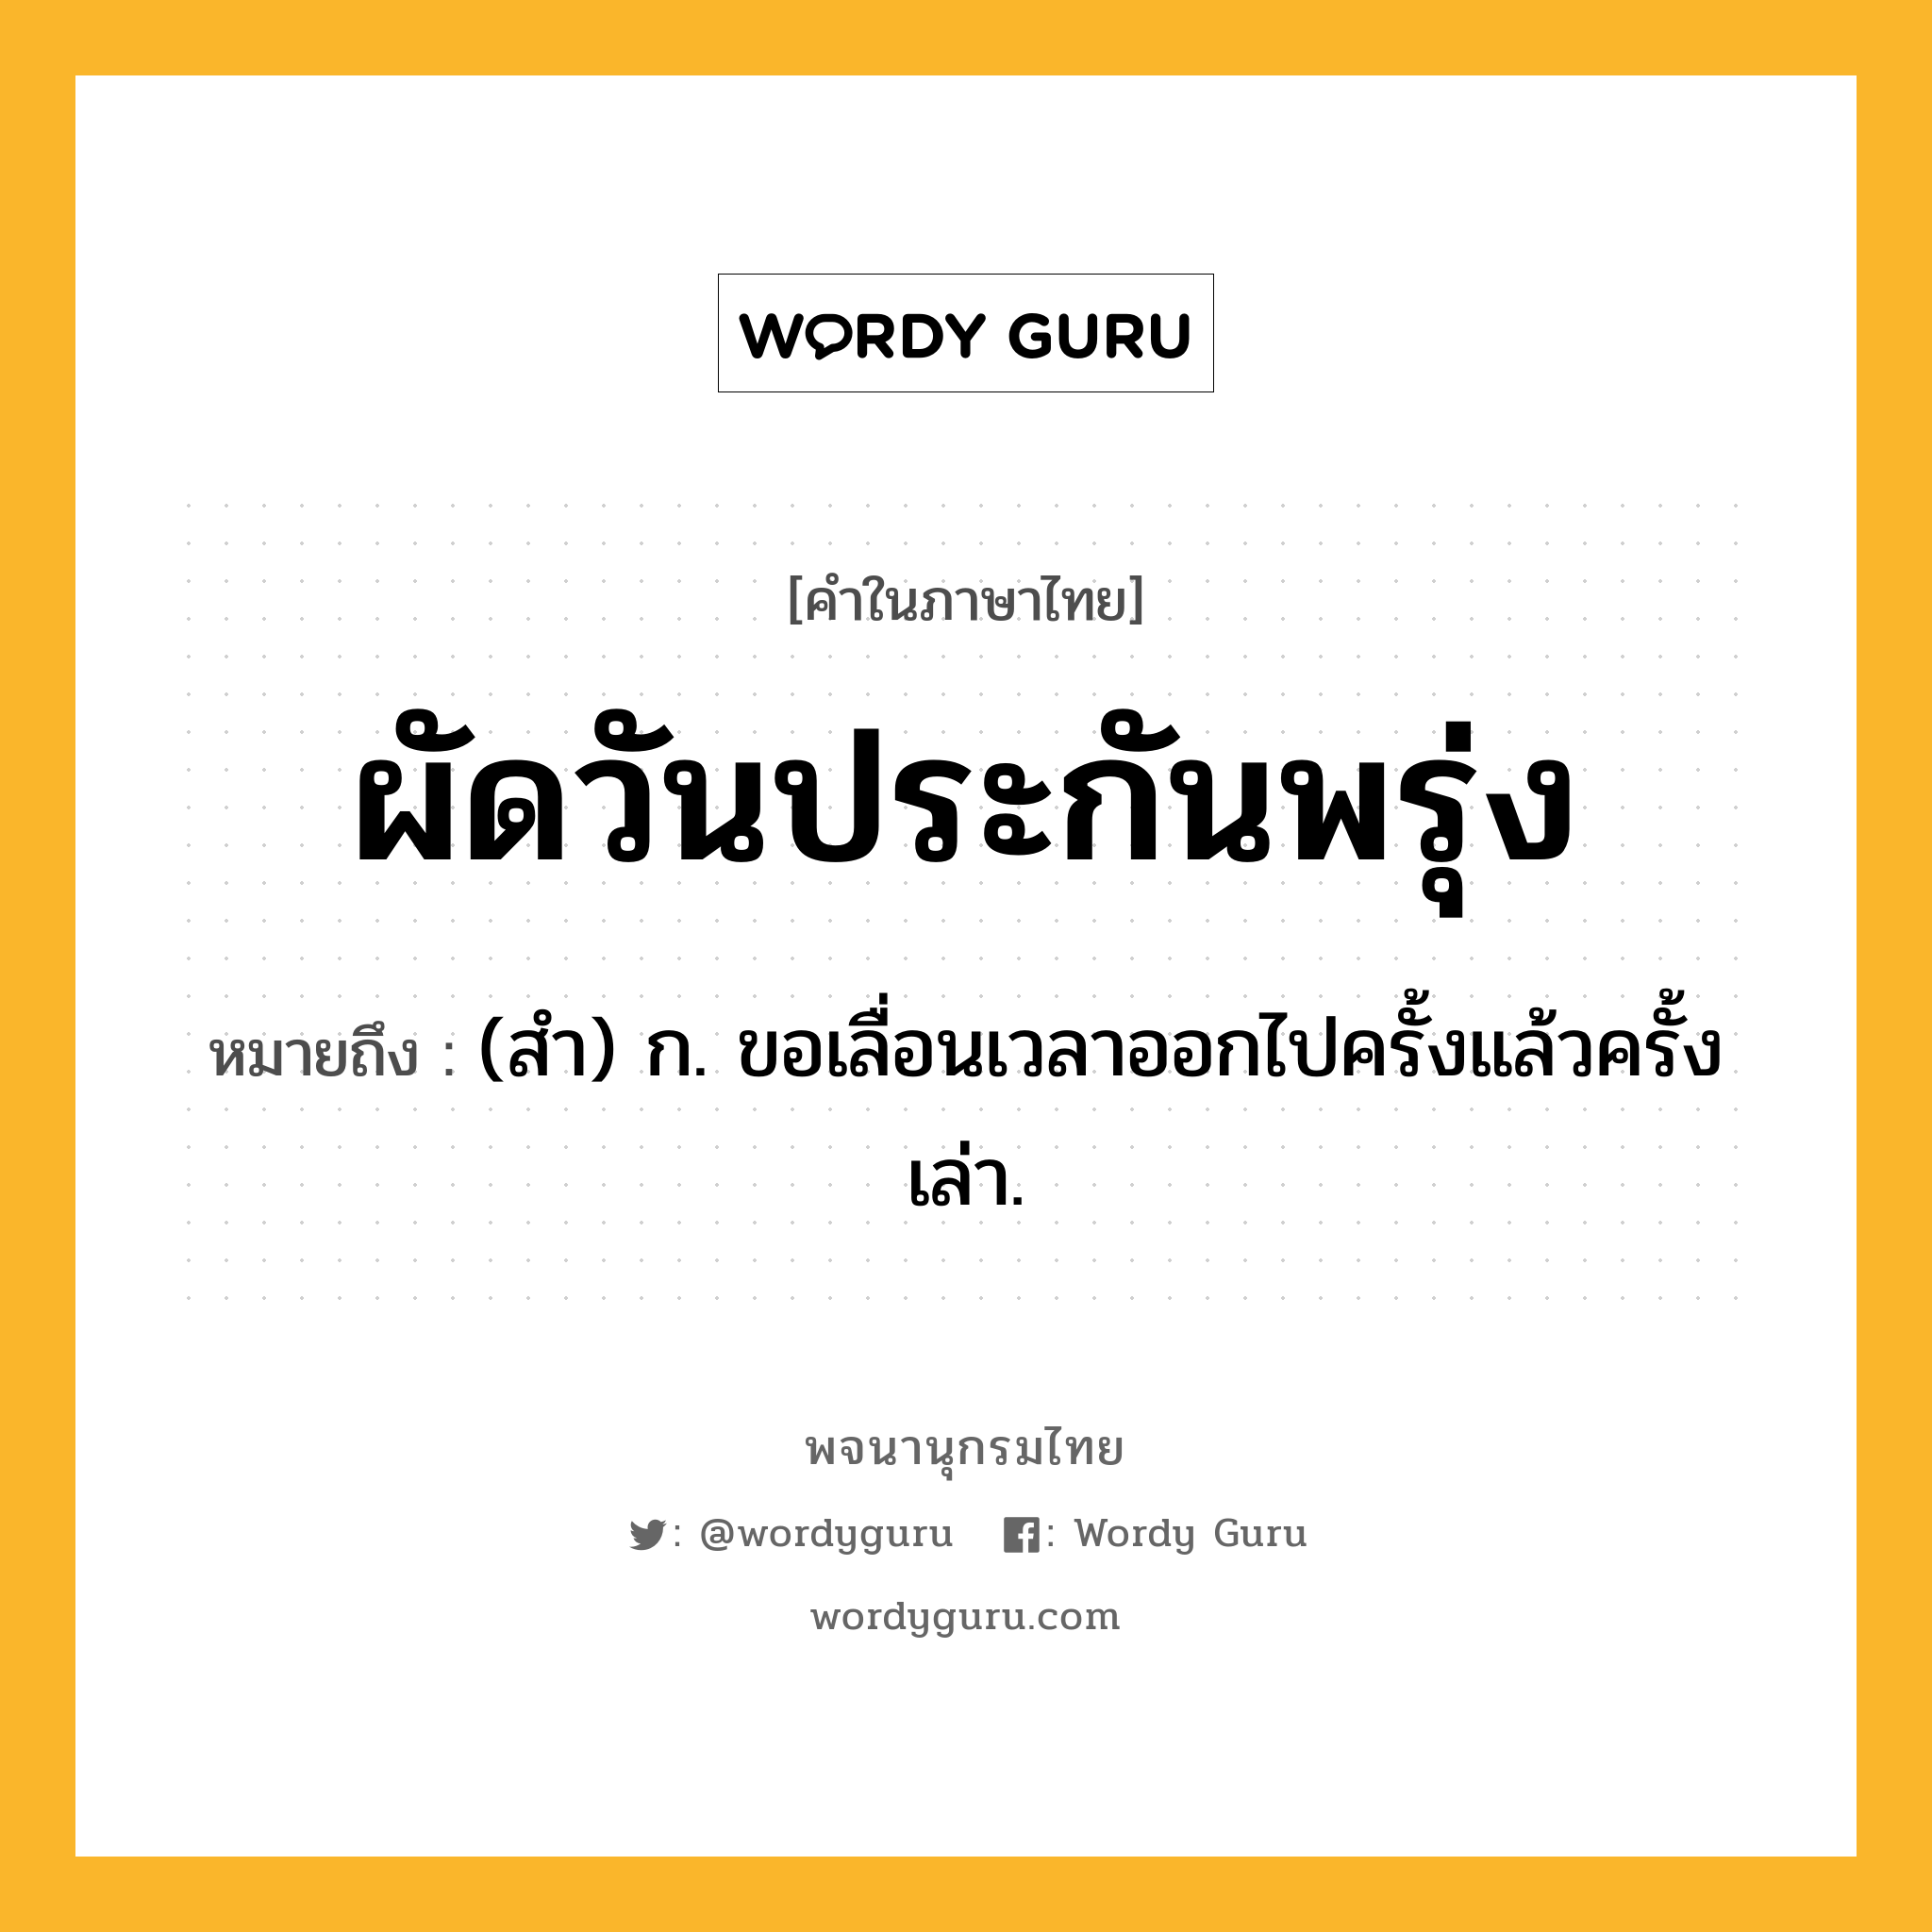 ผัดวันประกันพรุ่ง หมายถึงอะไร?, คำในภาษาไทย ผัดวันประกันพรุ่ง หมายถึง (สํา) ก. ขอเลื่อนเวลาออกไปครั้งแล้วครั้งเล่า.